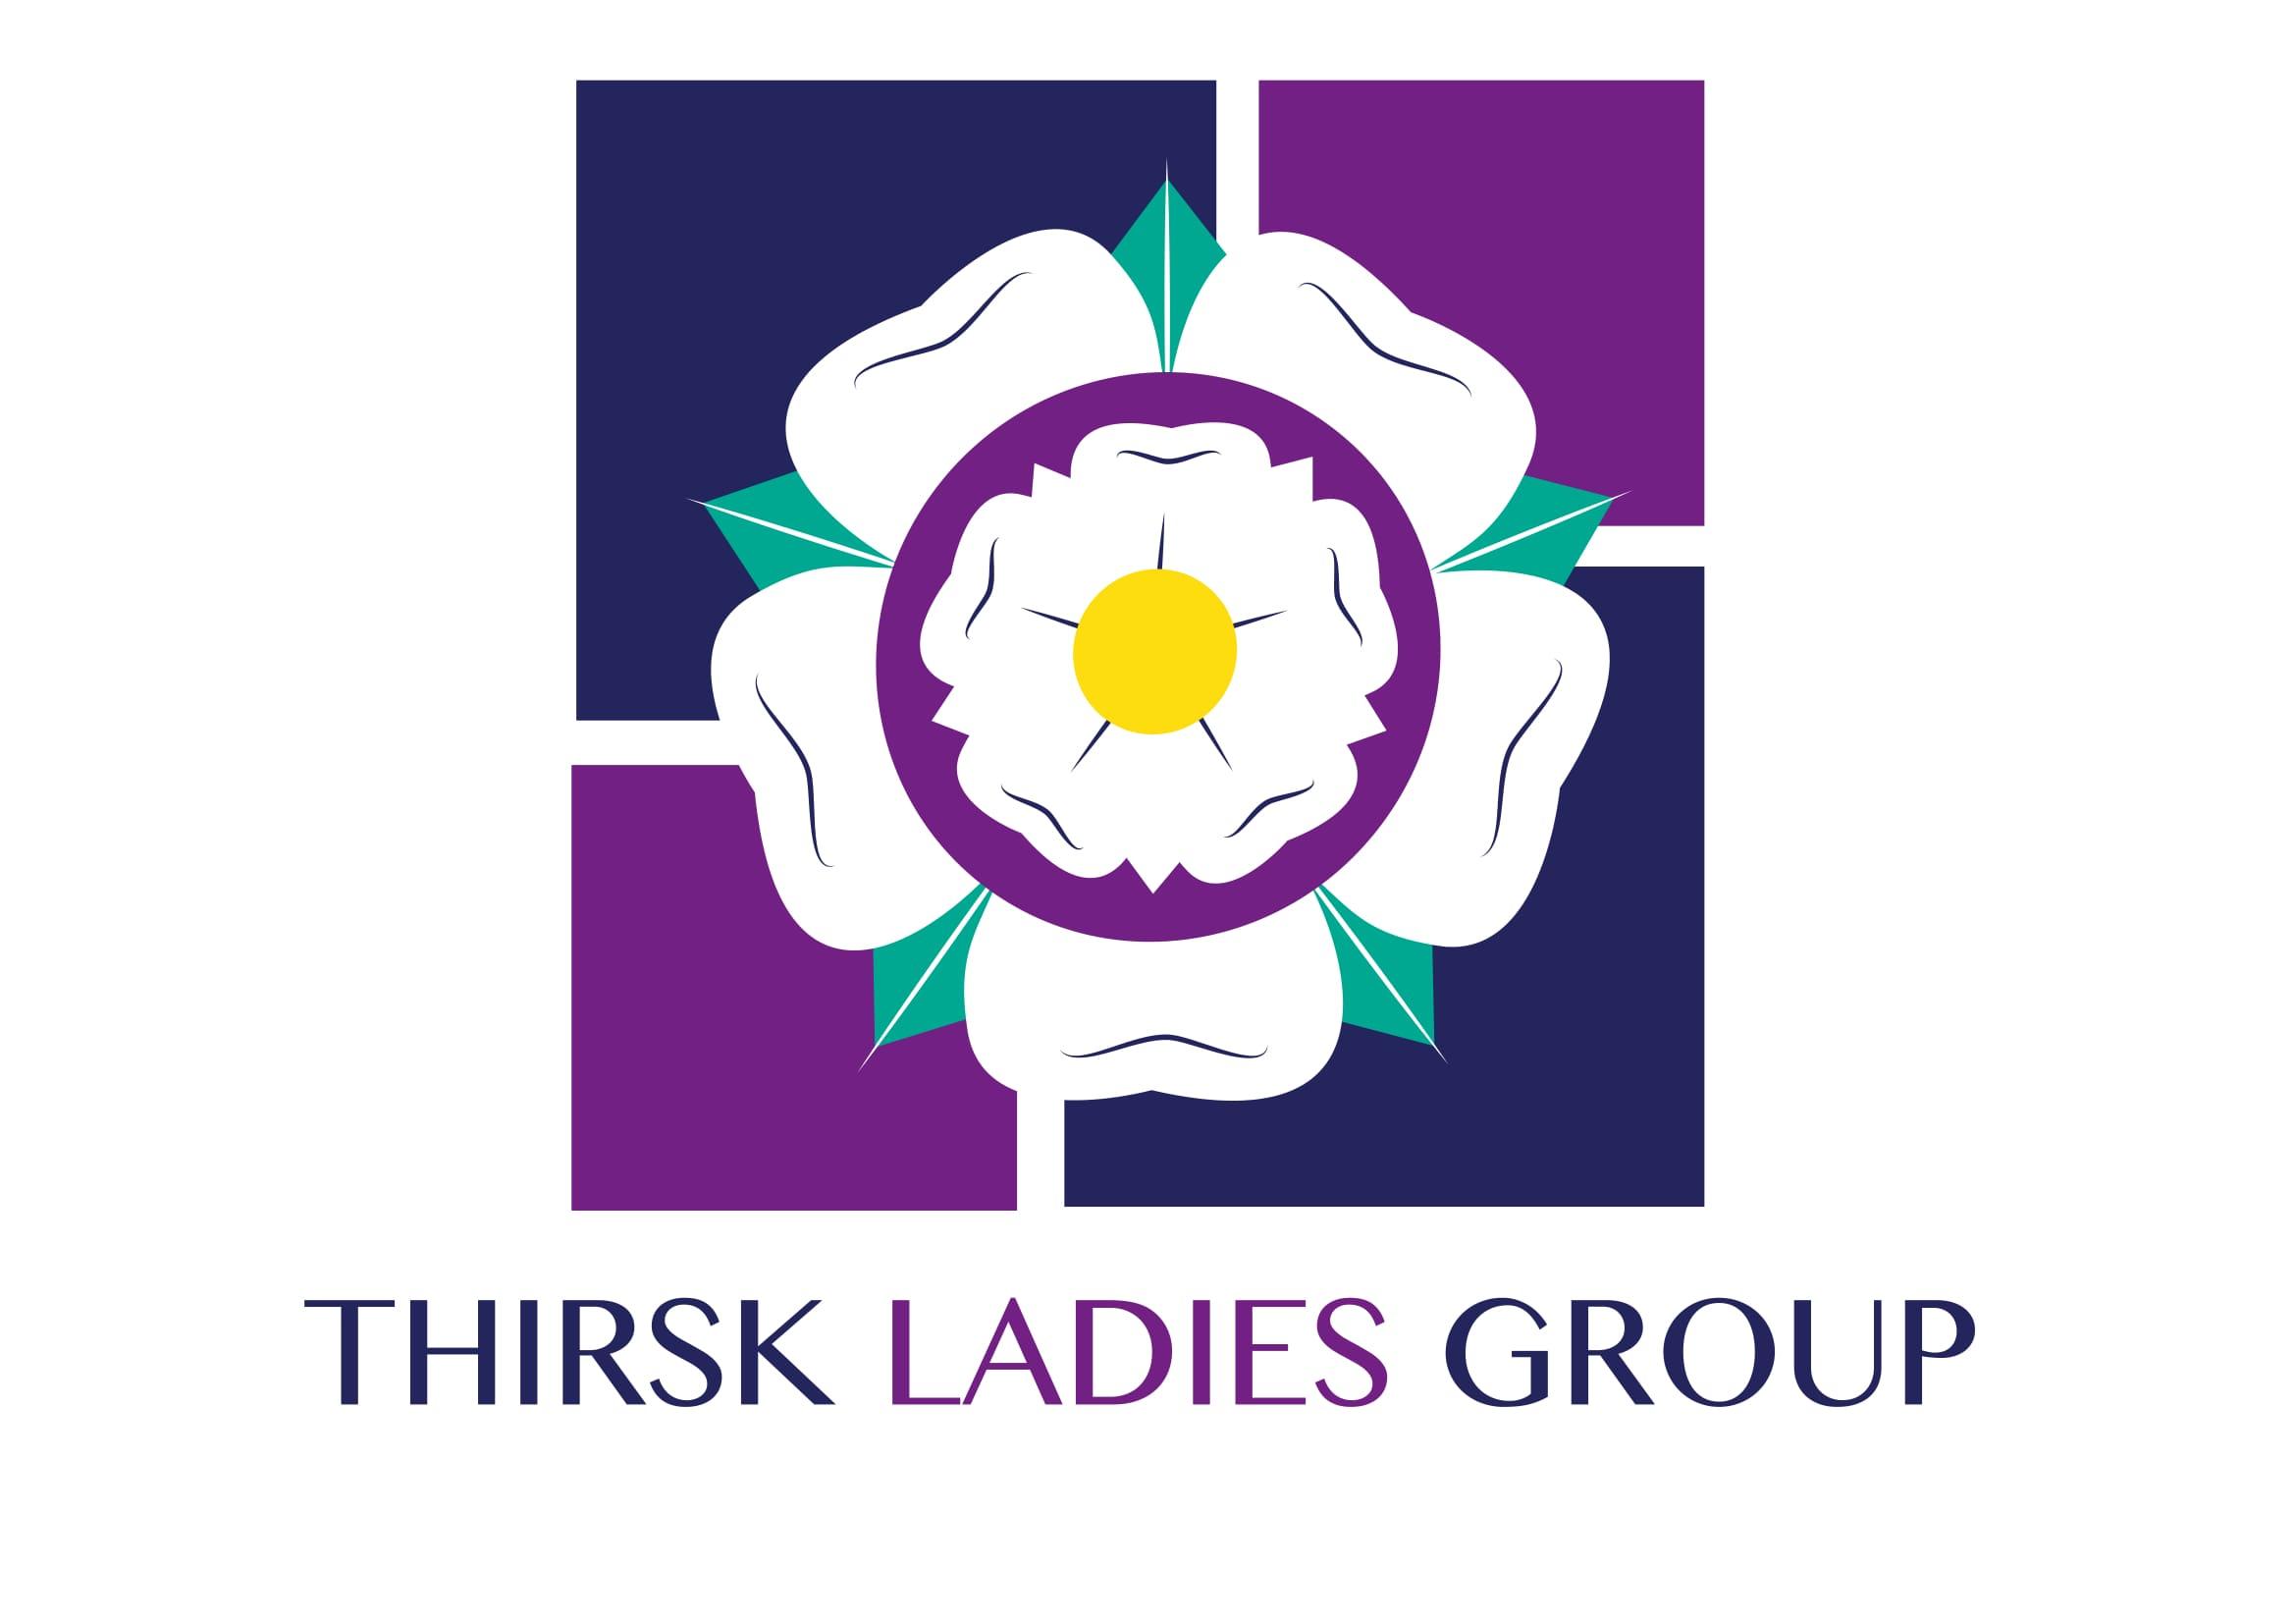 Thirsk Ladies Group